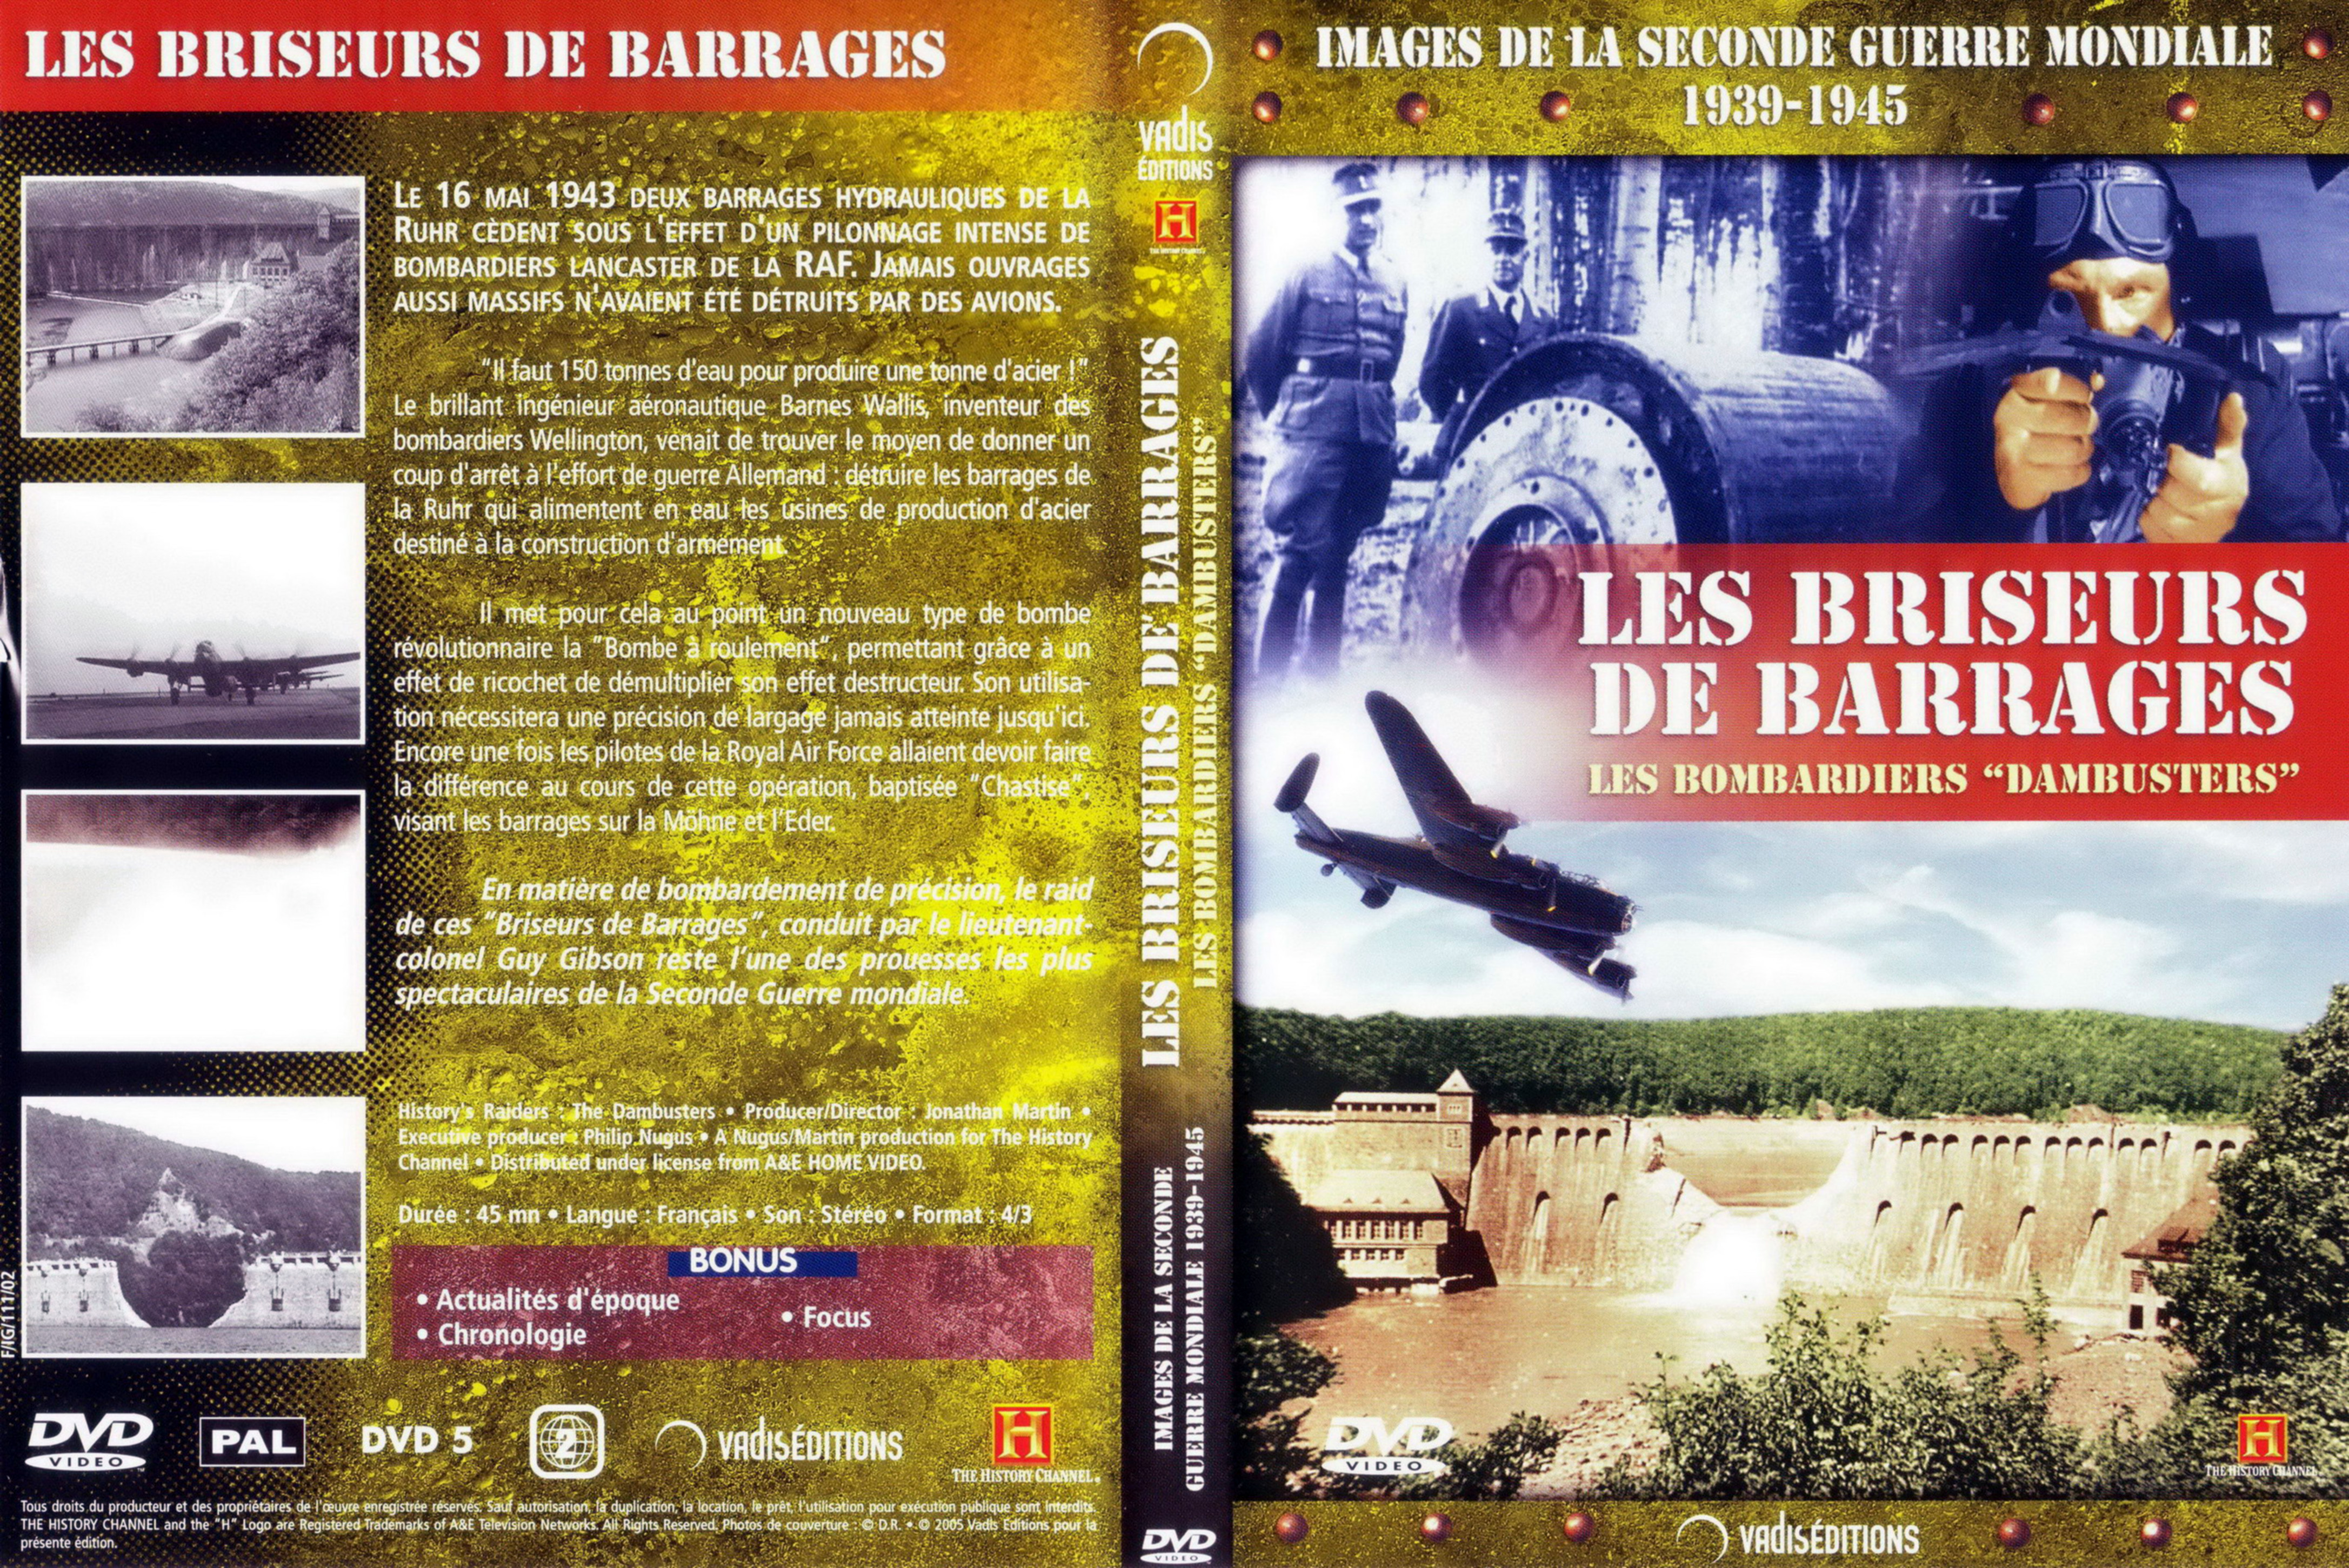 Jaquette DVD Images de la seconde guerre mondiale - Les briseurs de barrages